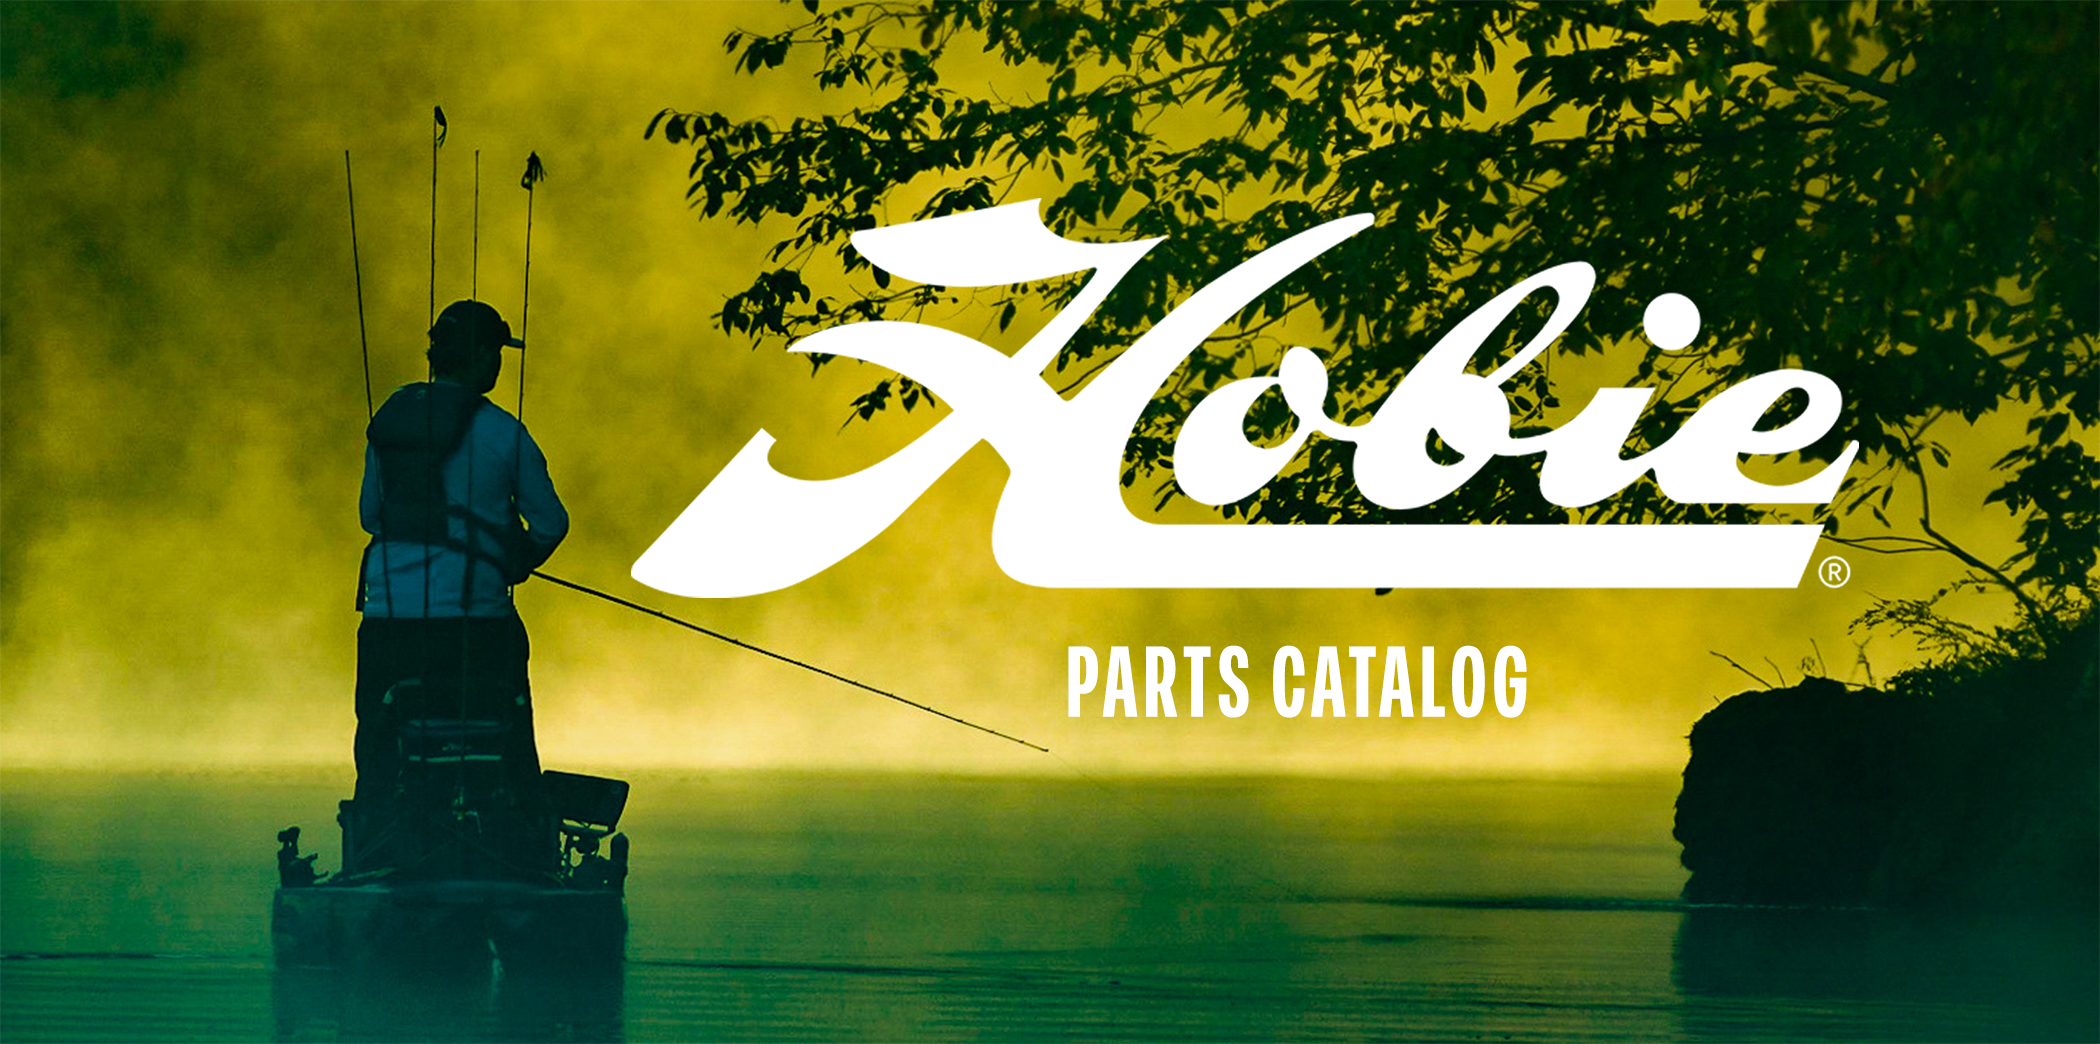 Hobie Parts Catalog